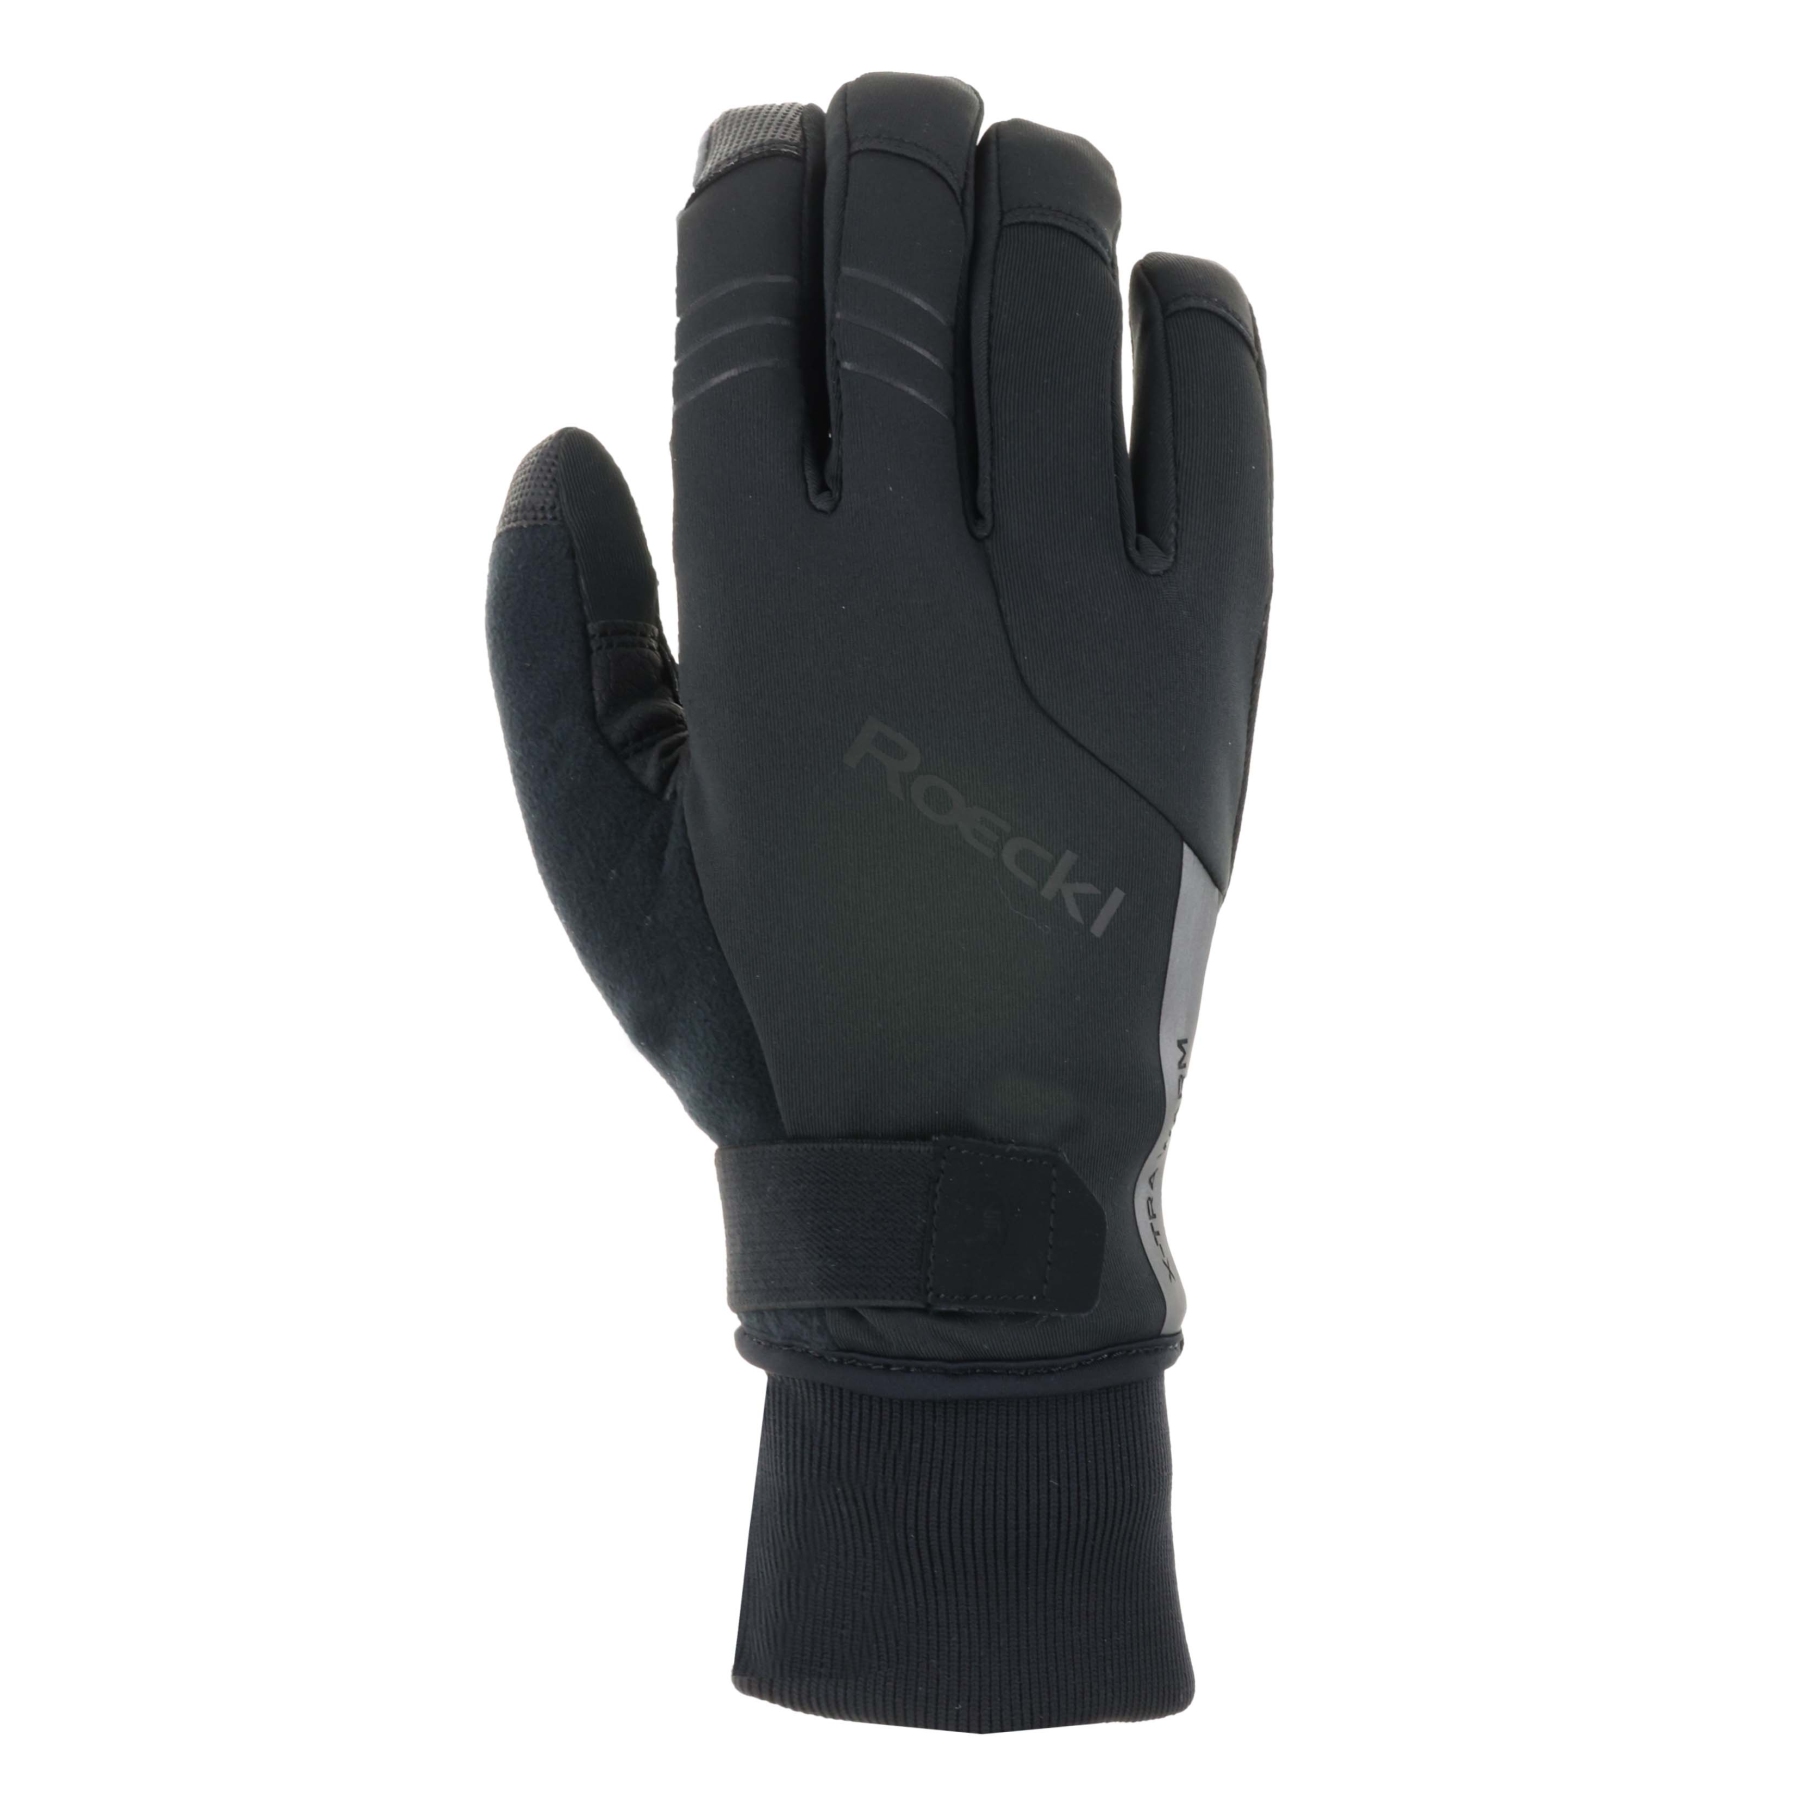 Productfoto van Roeckl Sports Villach 2 Fietshandschoenen - zwart 9000